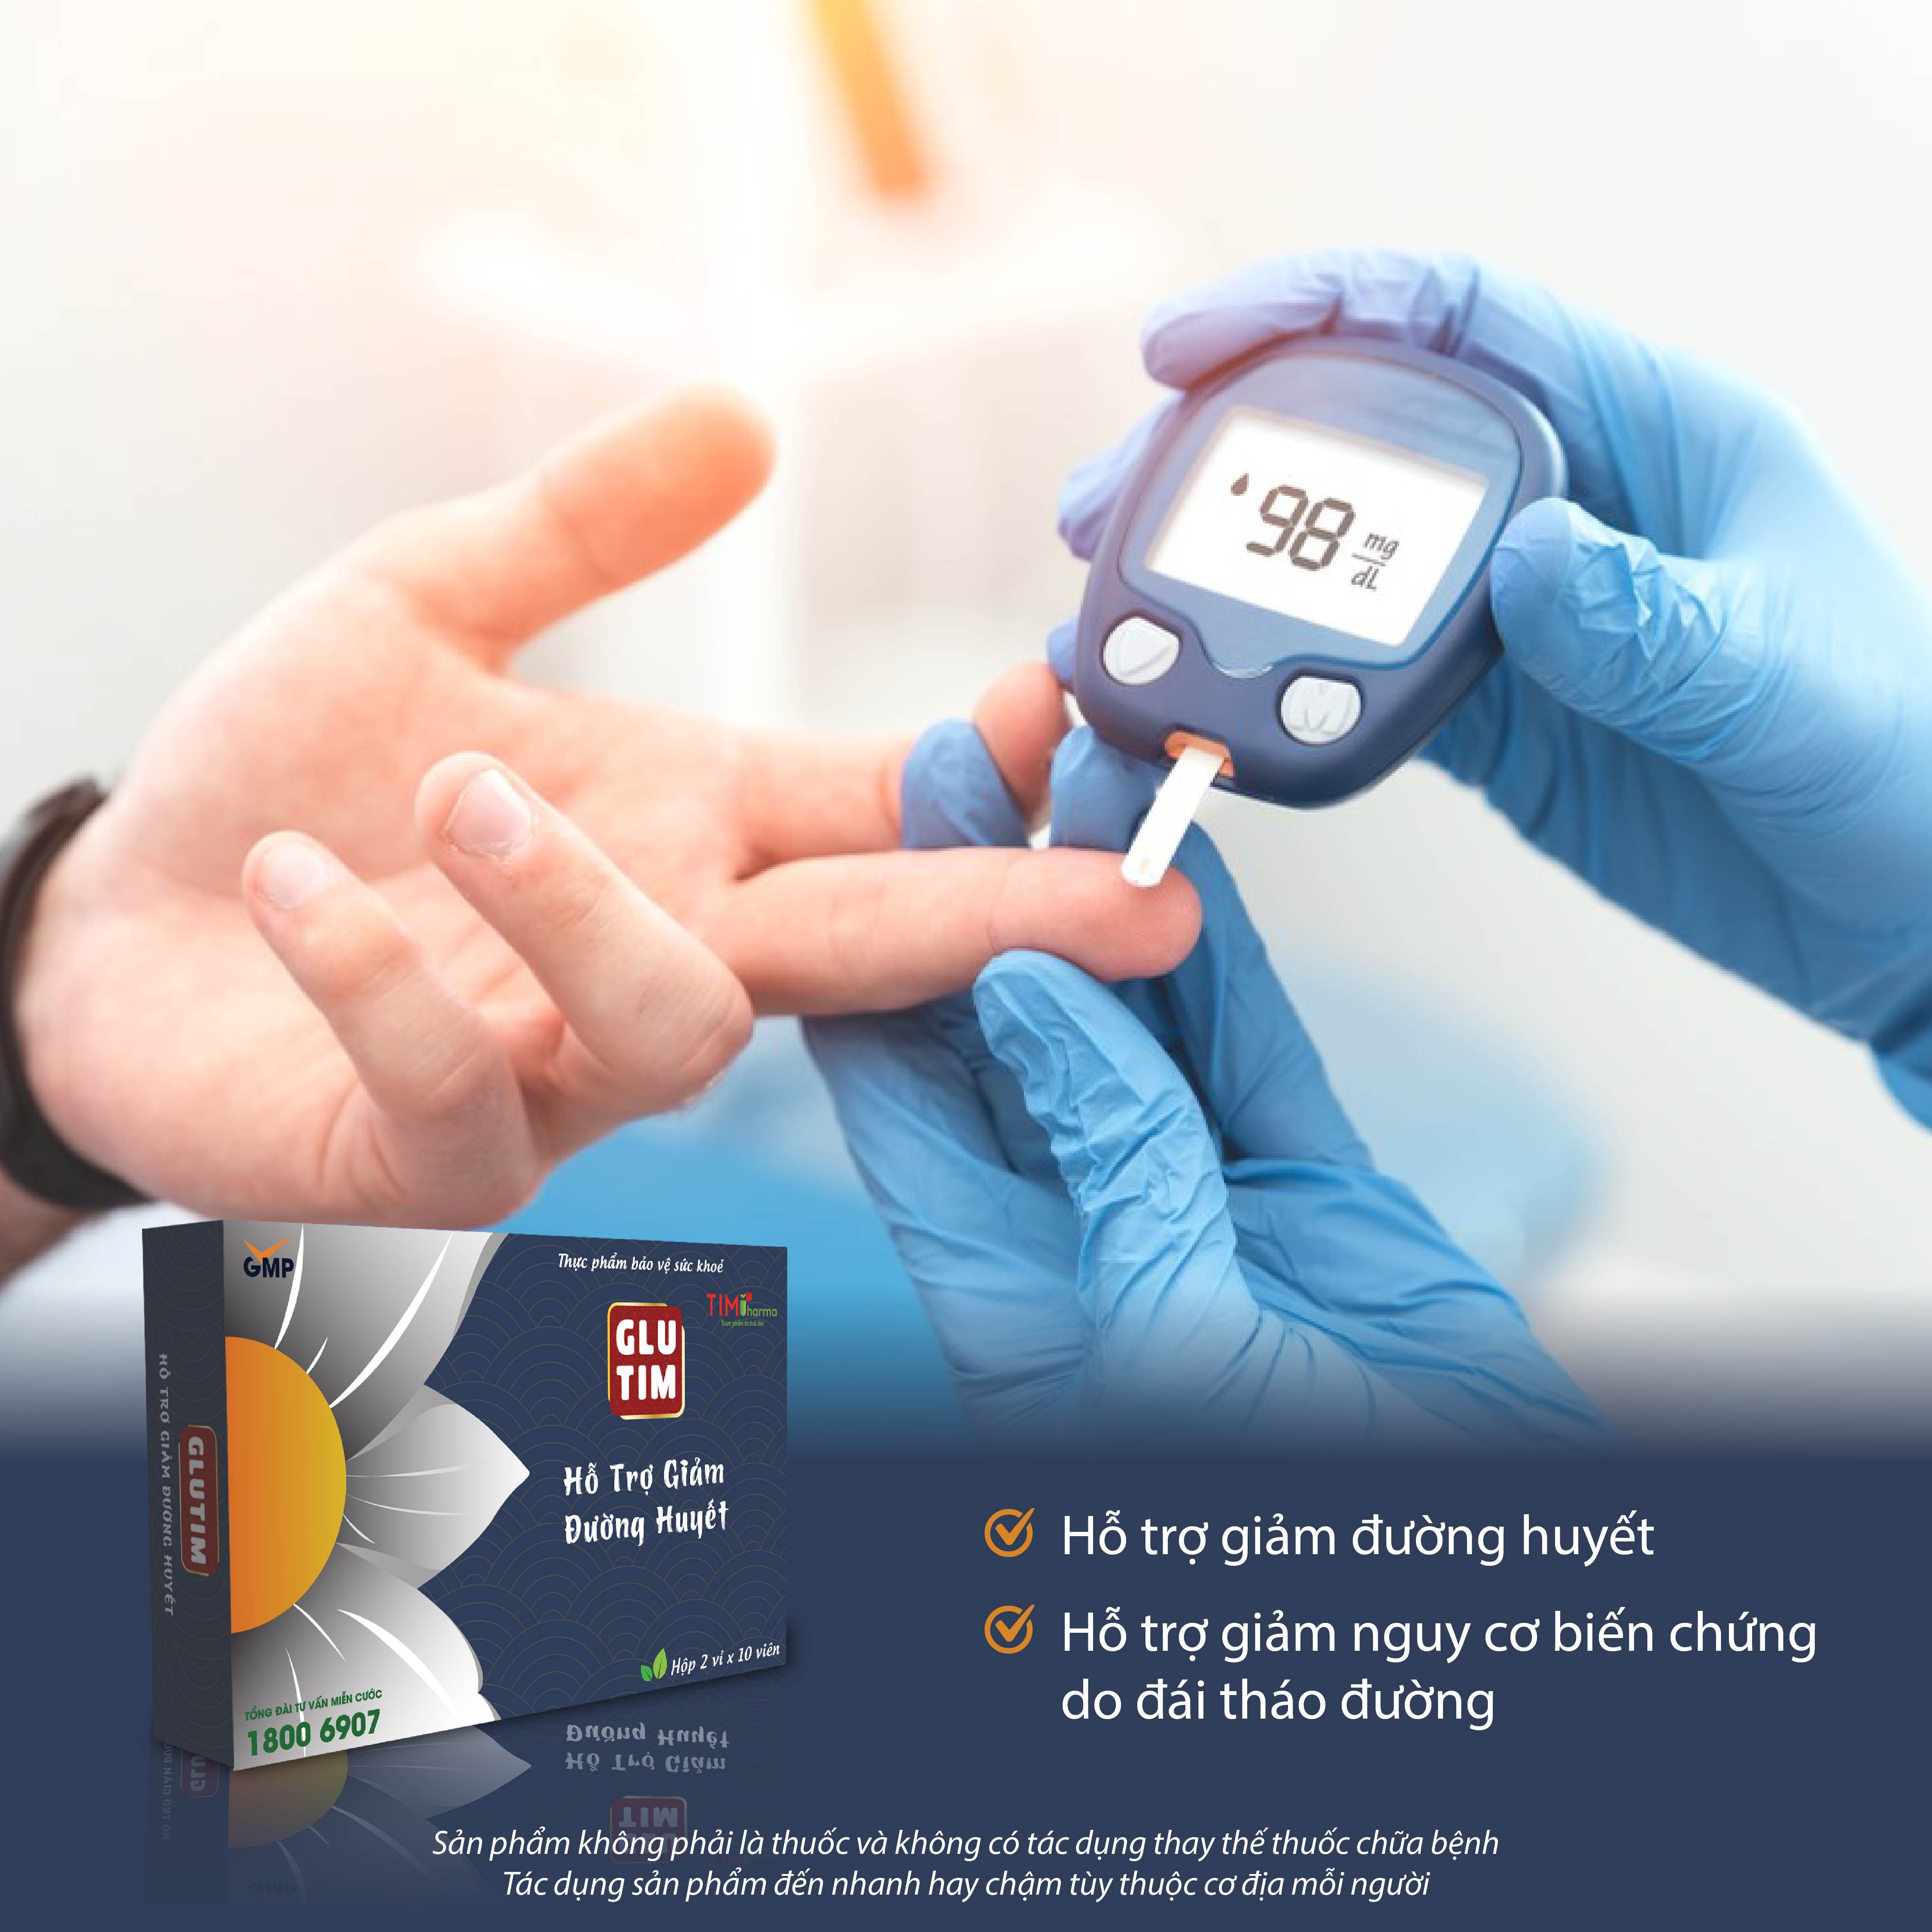 TPBVSK GLUTIM – Hỗ trợ giảm đường huyết, hỗ trợ giảm nguy cơ biến chứng do đái tháo đường